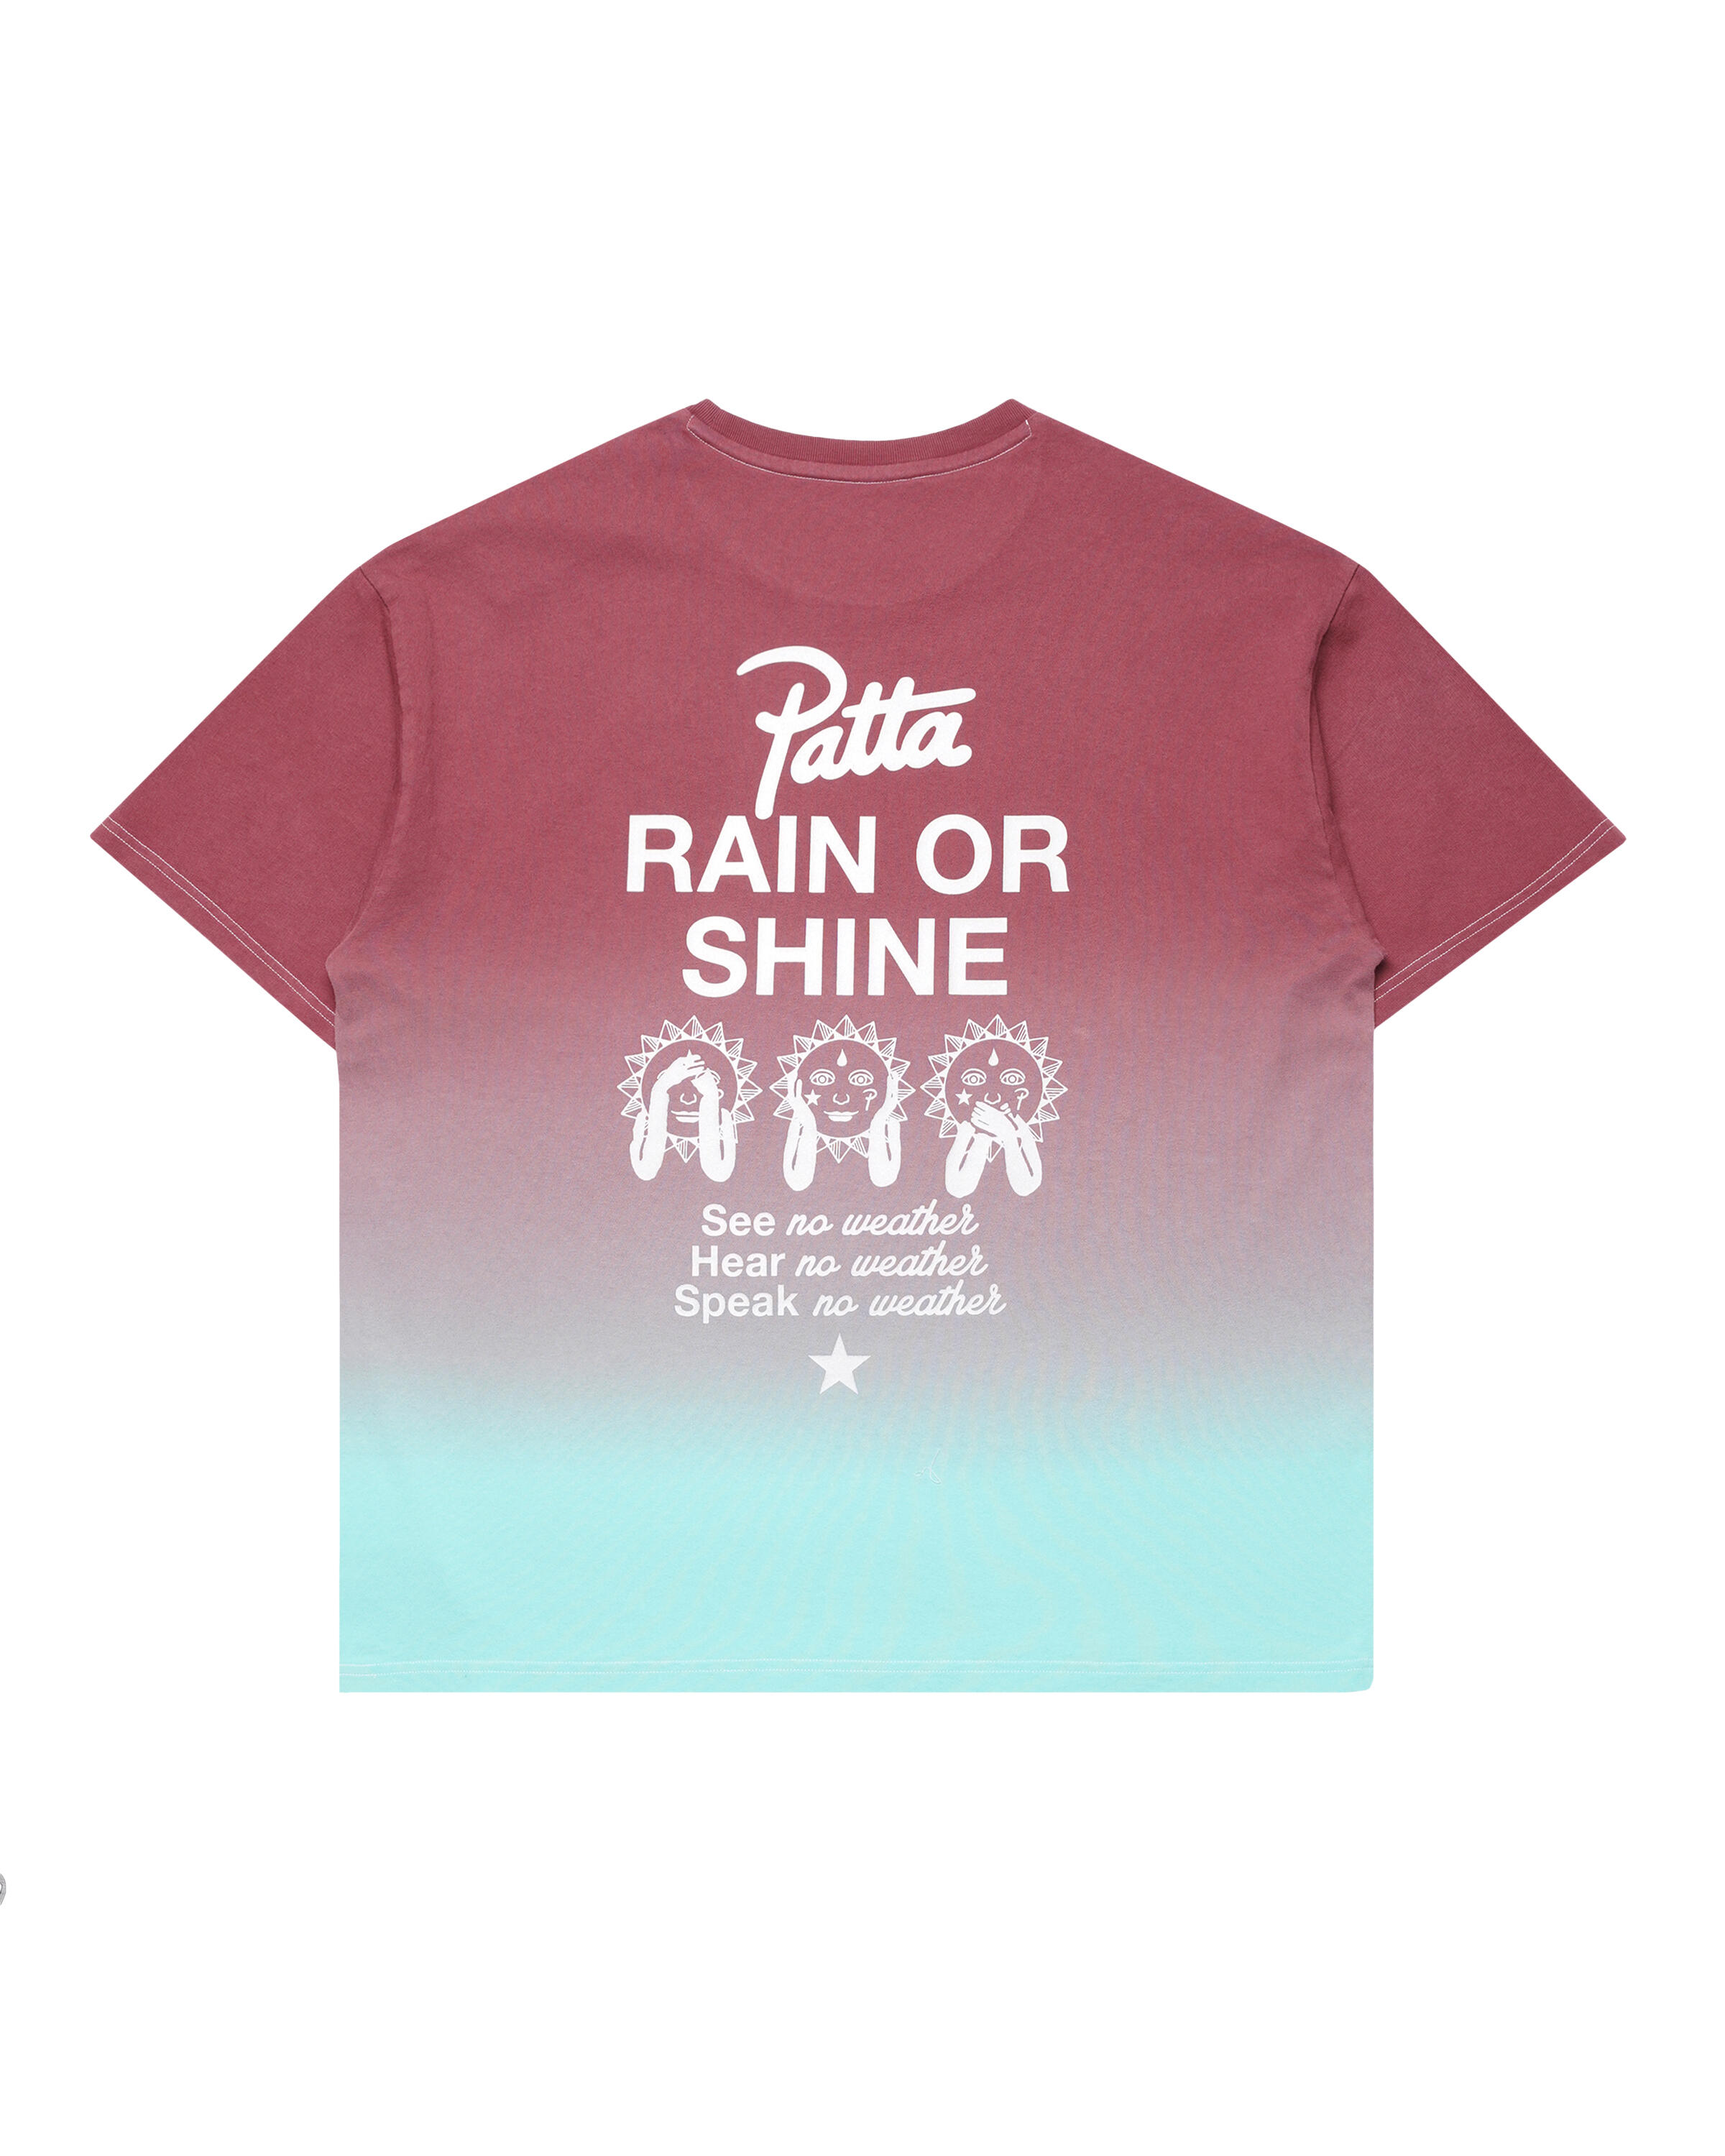 Converse x PATTA Rain or Shine T-Shirt